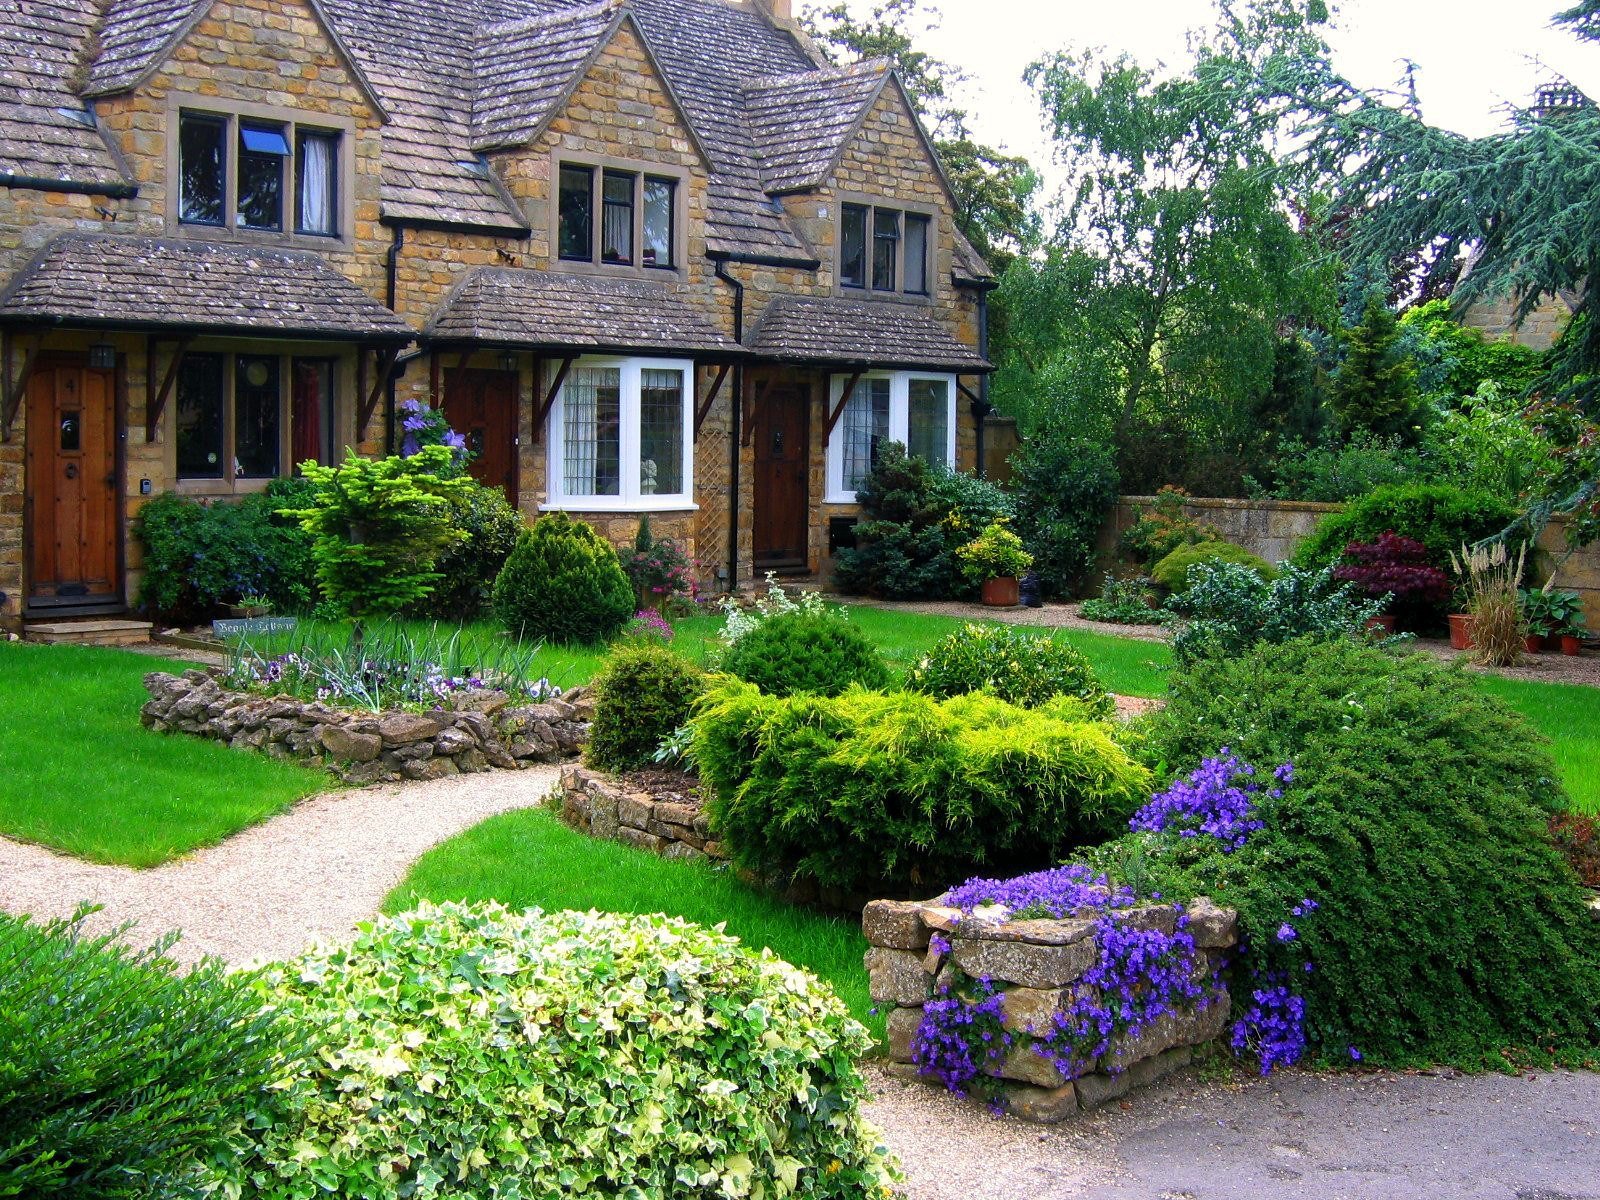 Около дома был сад. Англия деревня кэмбэлфорд ланшадф садов. Сад в английском пейзажном стиле. Ландшафта стиль Тюдоров (английский Ренессанс). Ландшафтный сад большато Англии.